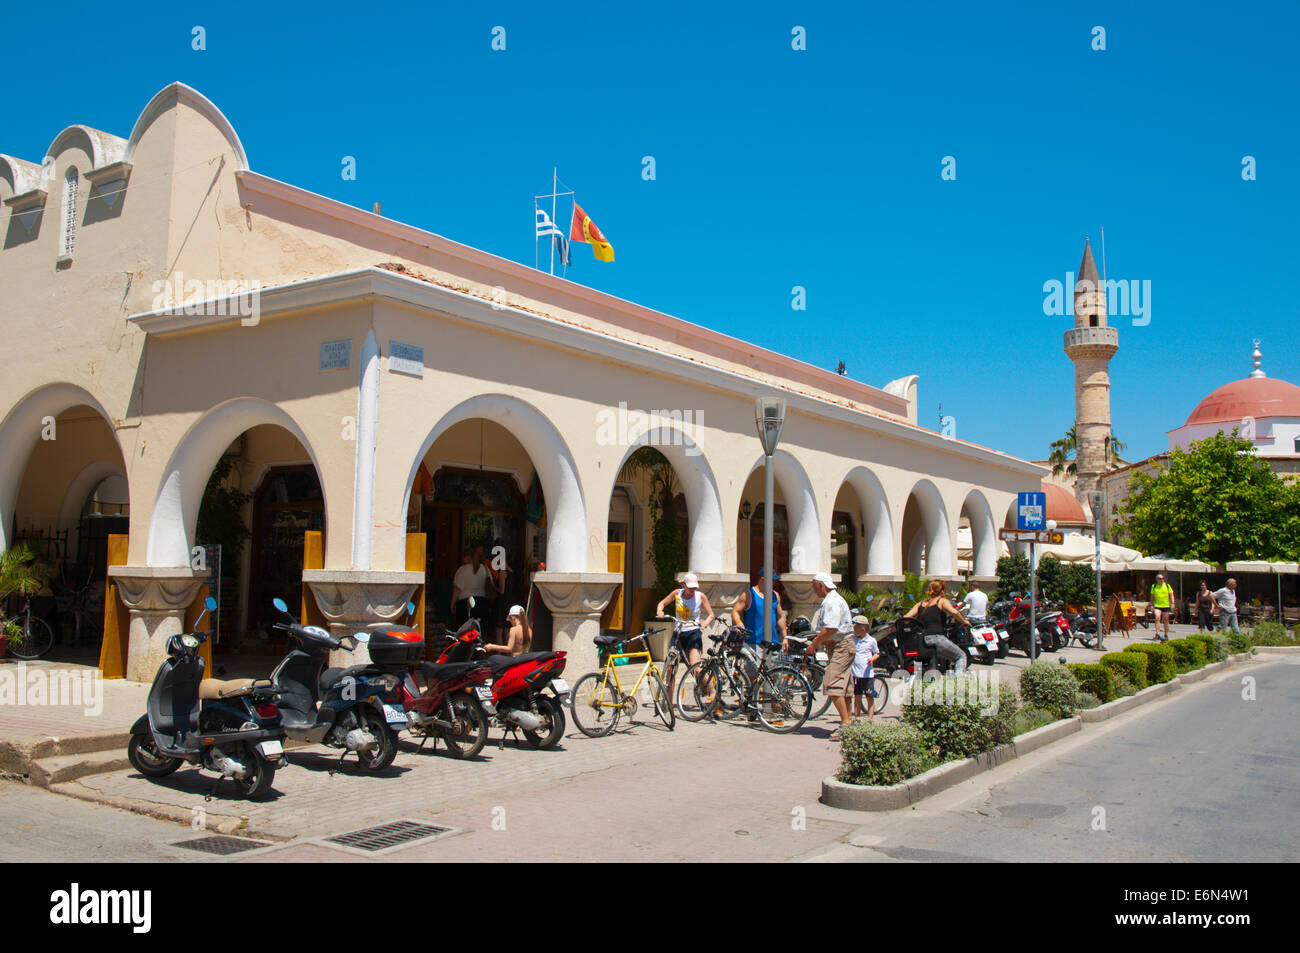 Dimoiki Dorag market hall exterior, old town, Kos town, Kos island, Dodecanese islands, South Aegean region, Greece, Europe Stock Photo